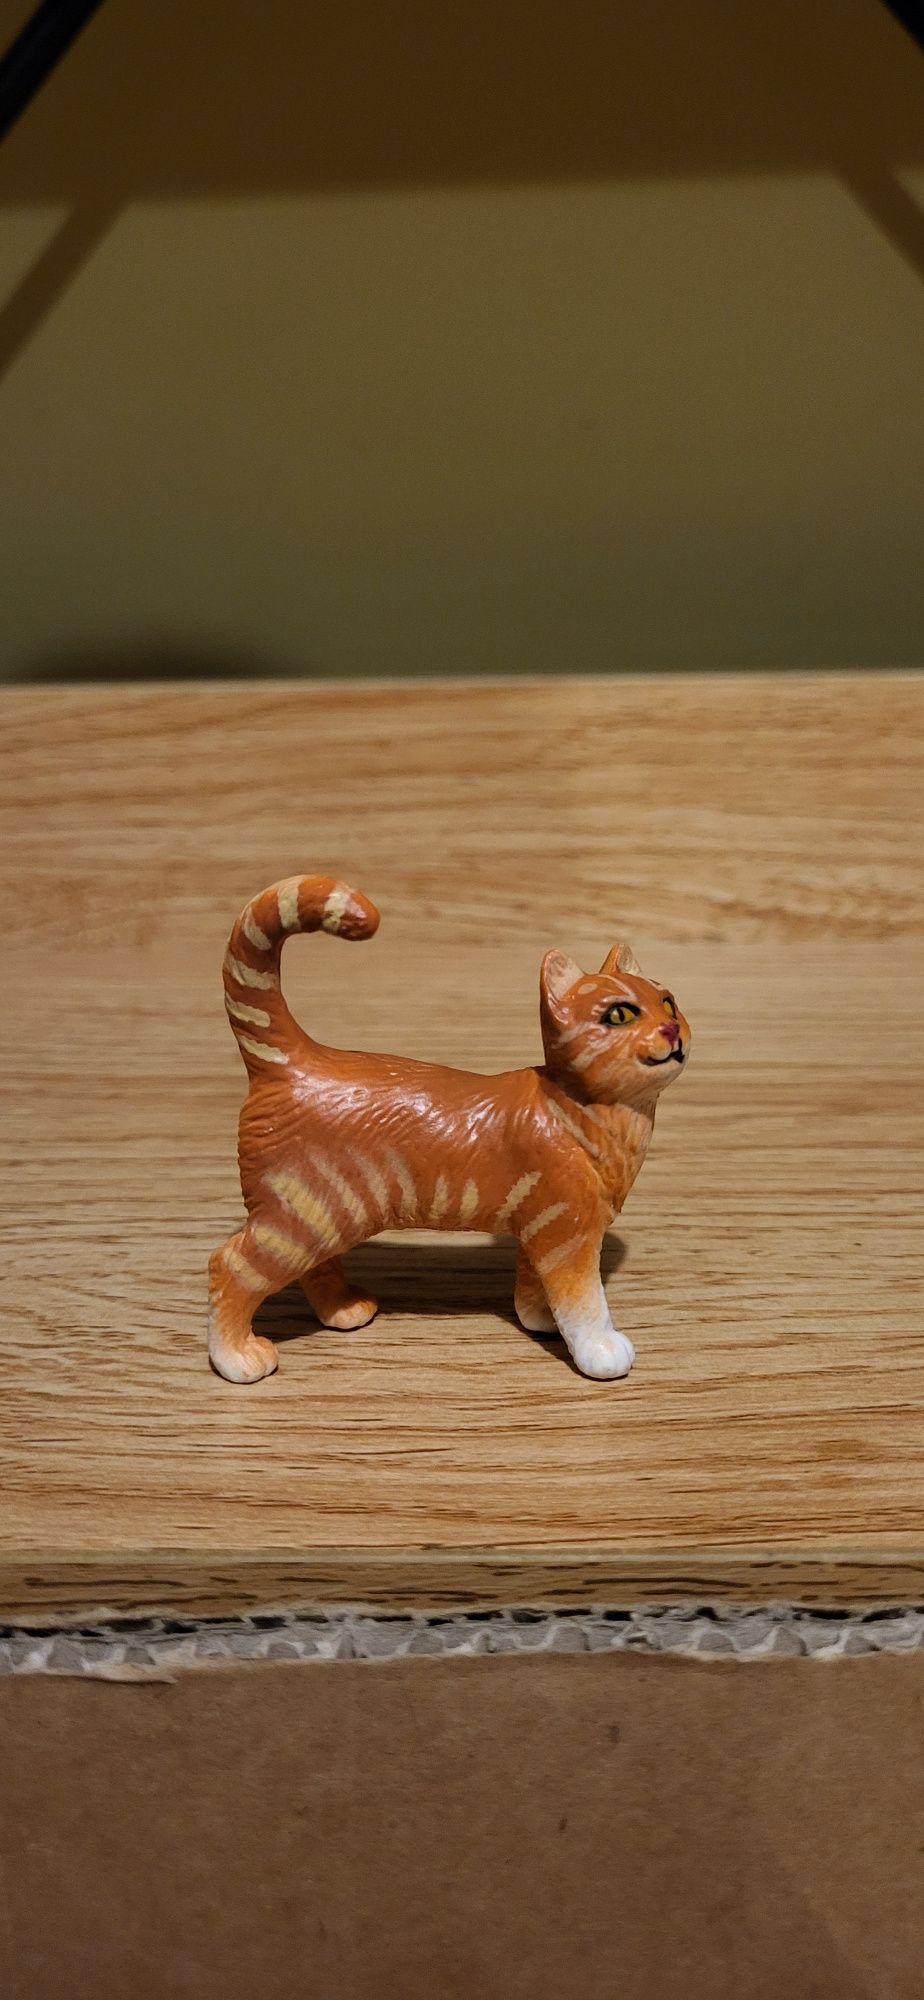 Safari Ltd kot pręgowany Tabby Cat figurka model z 2018 r.